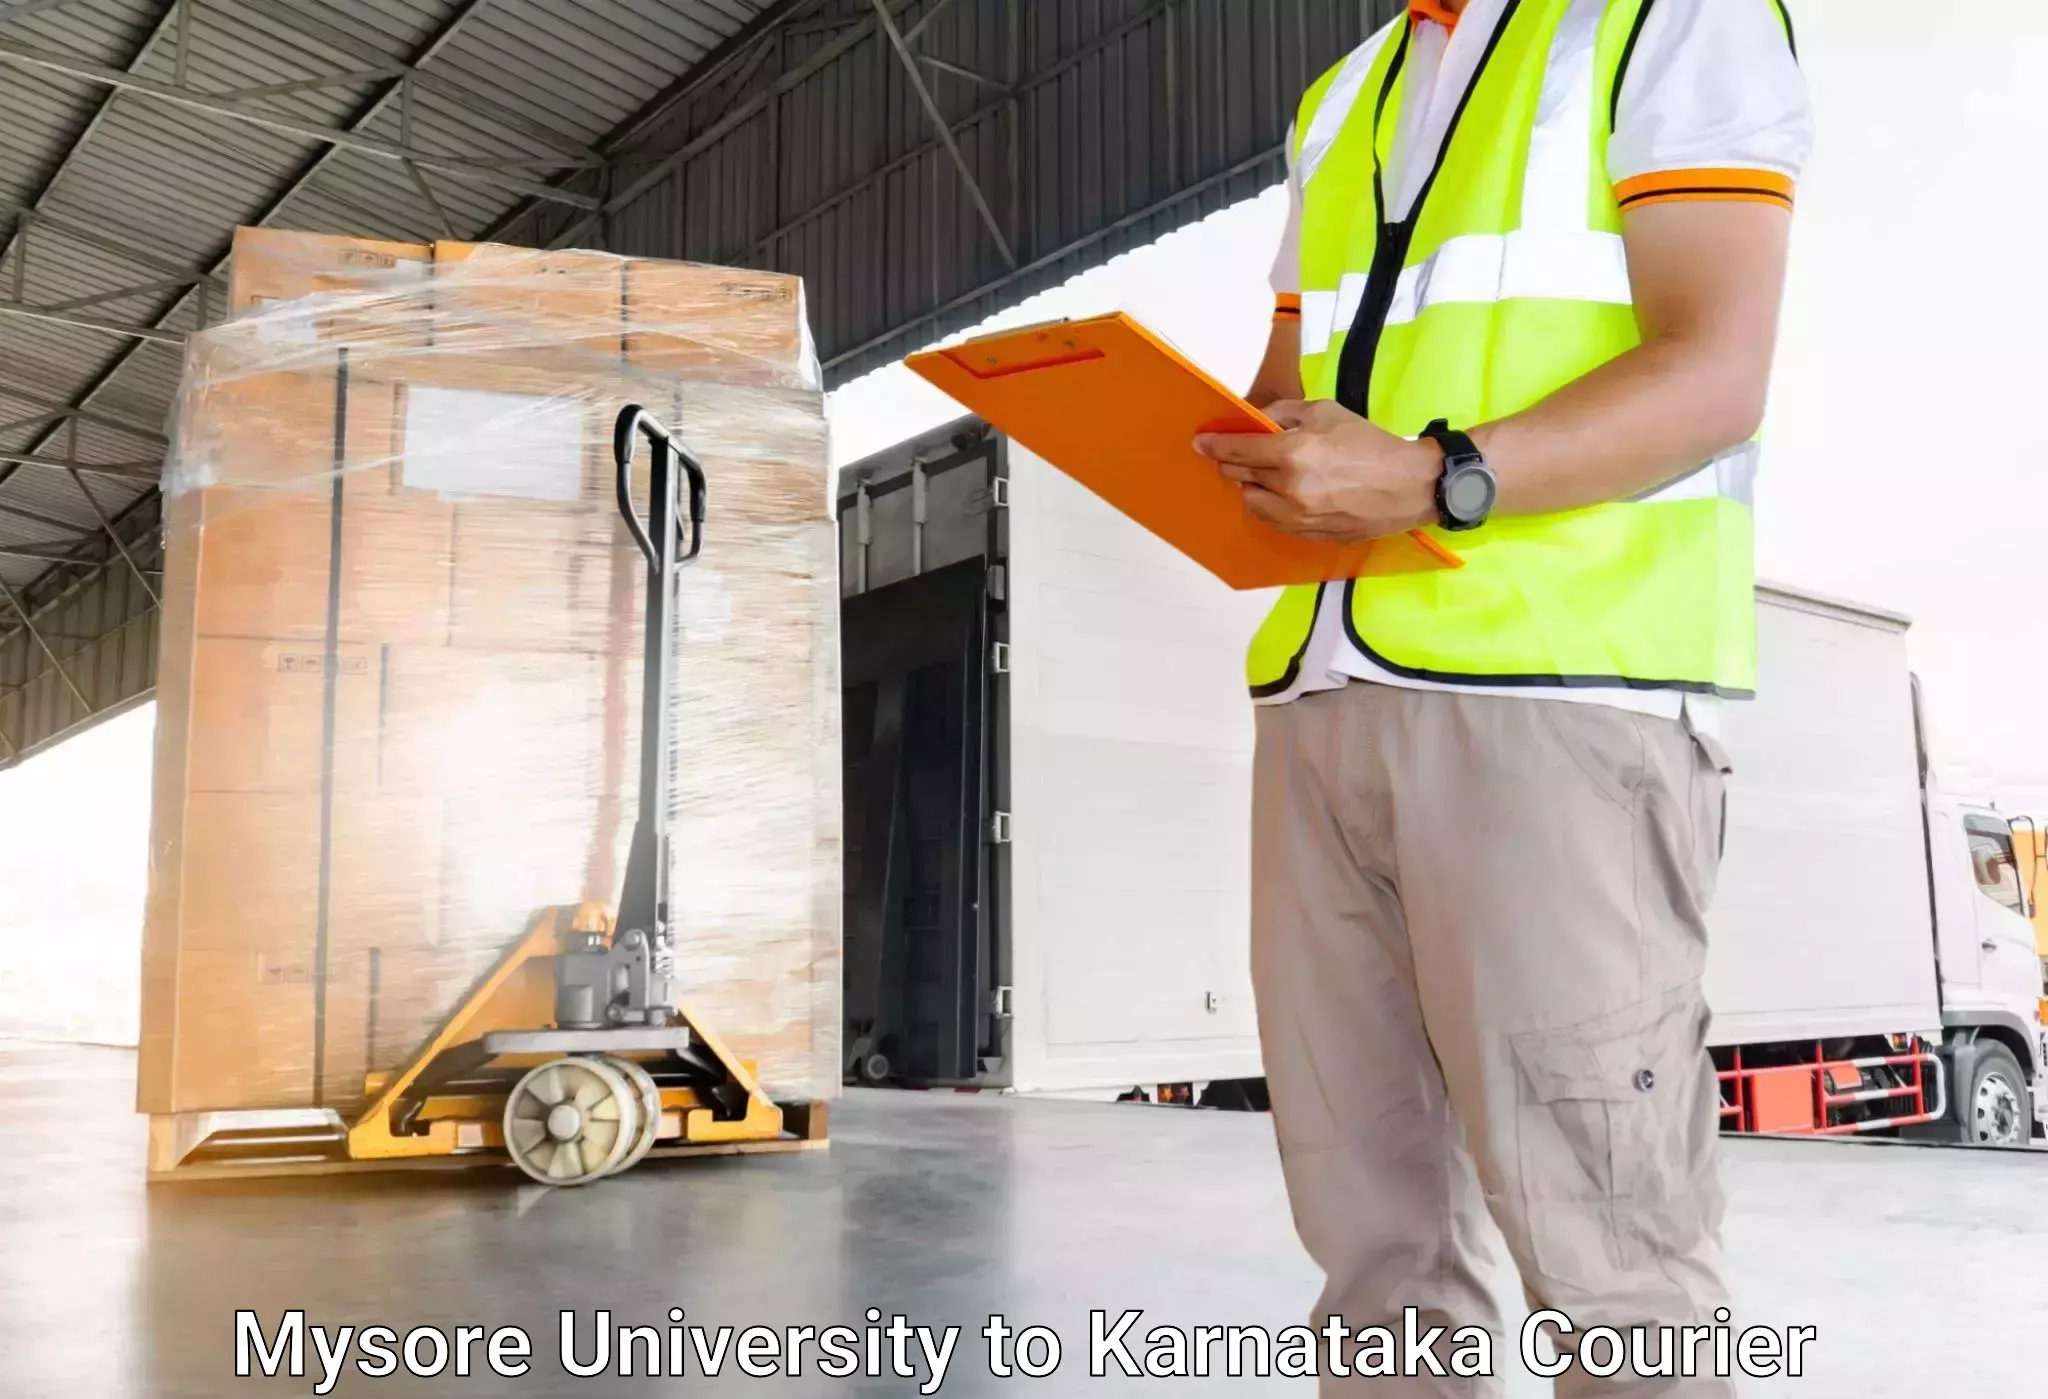 Door-to-door baggage service Mysore University to Belthangady